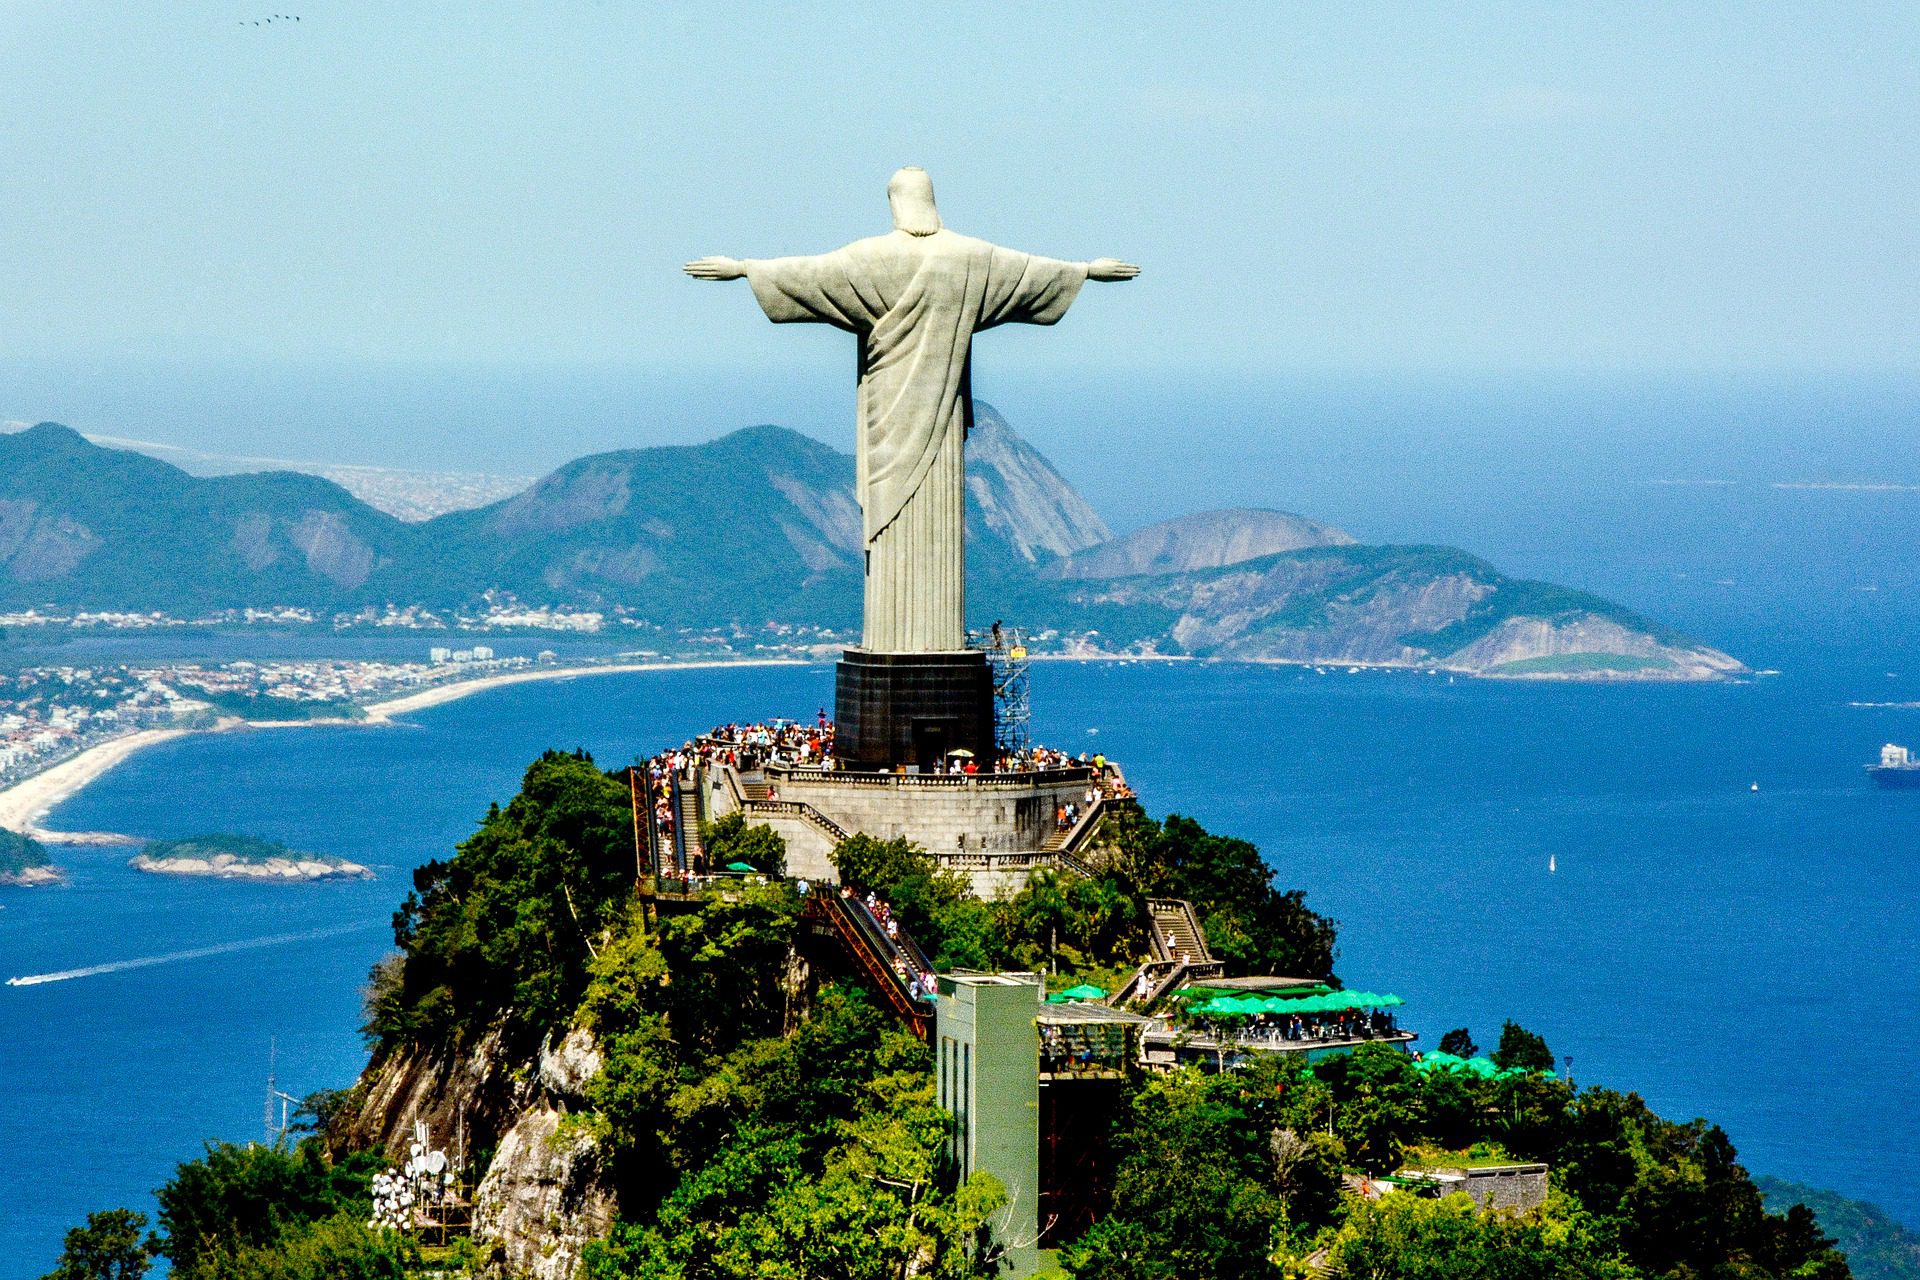 Christ the Redeemer in Rio de Janeiro, Brazil